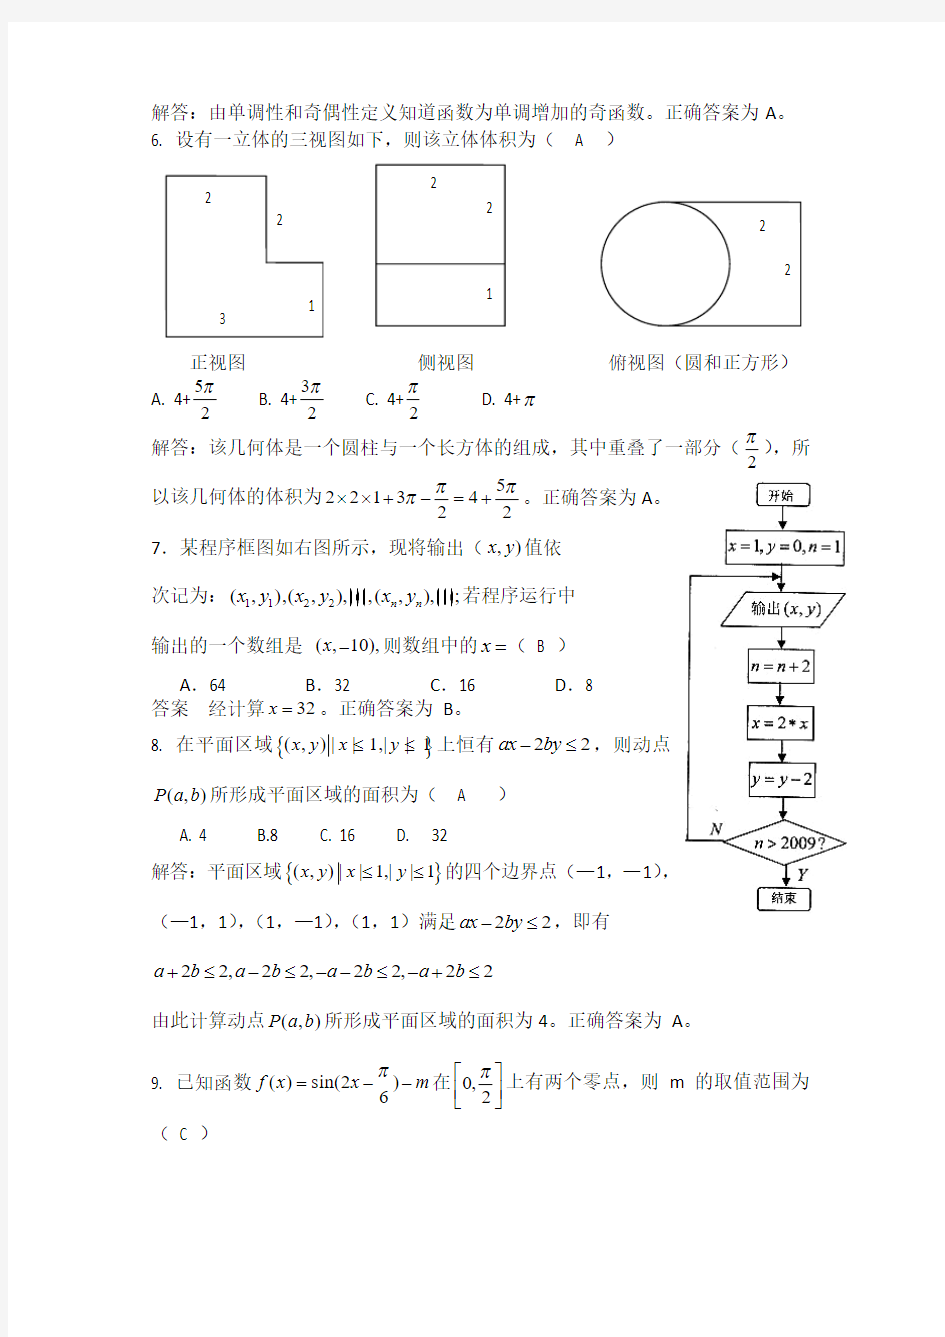 2019年浙江省高中数学竞赛试题参考解答与评分标准